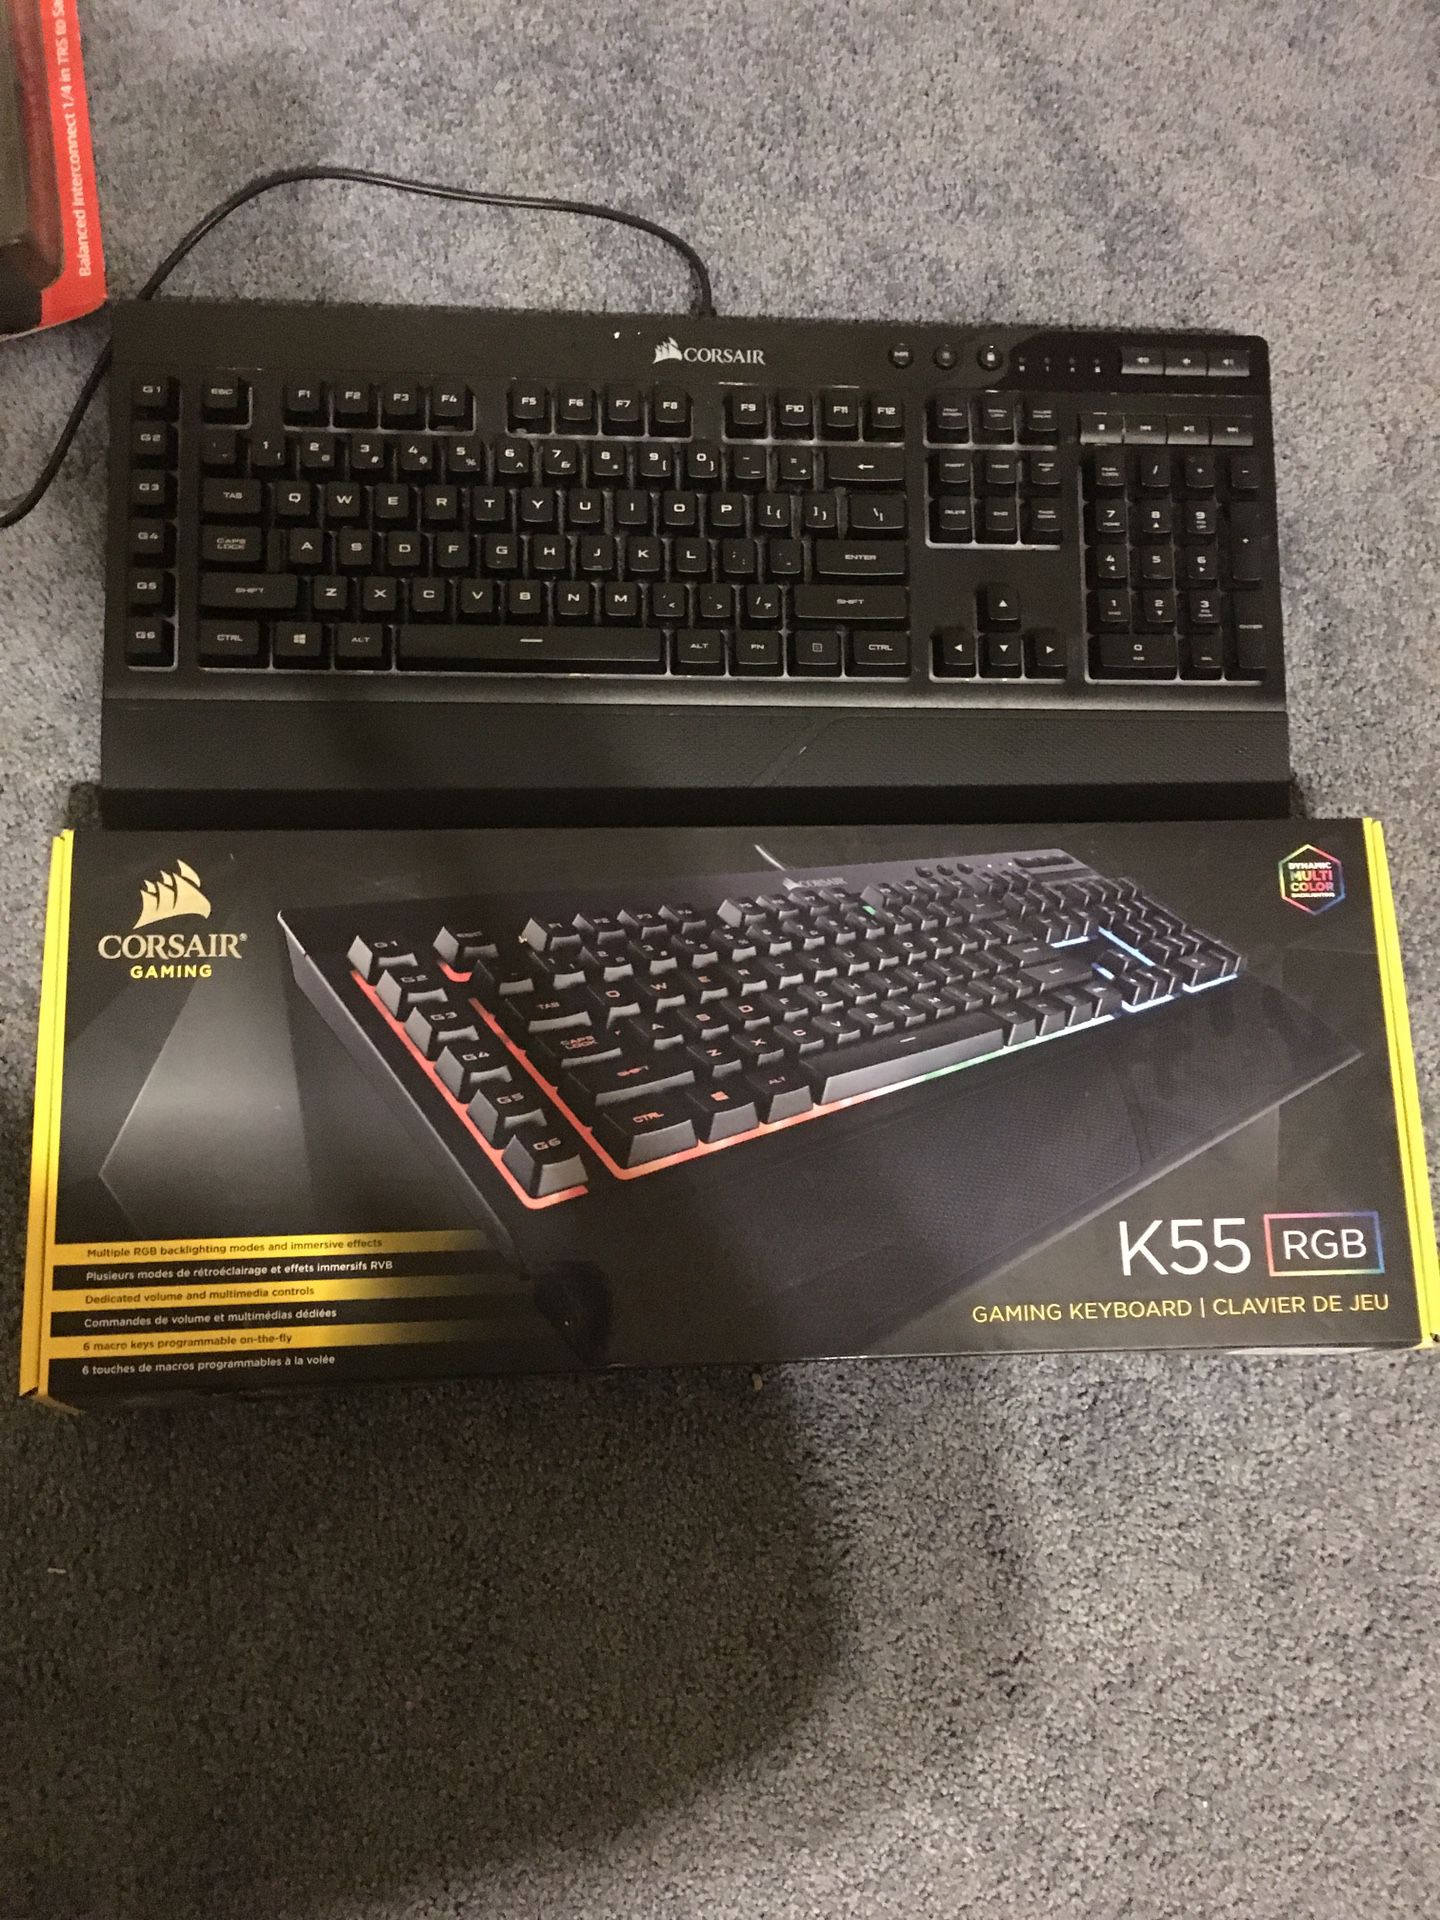 Corsair Gaming K55 RGB Gaming Keyboard